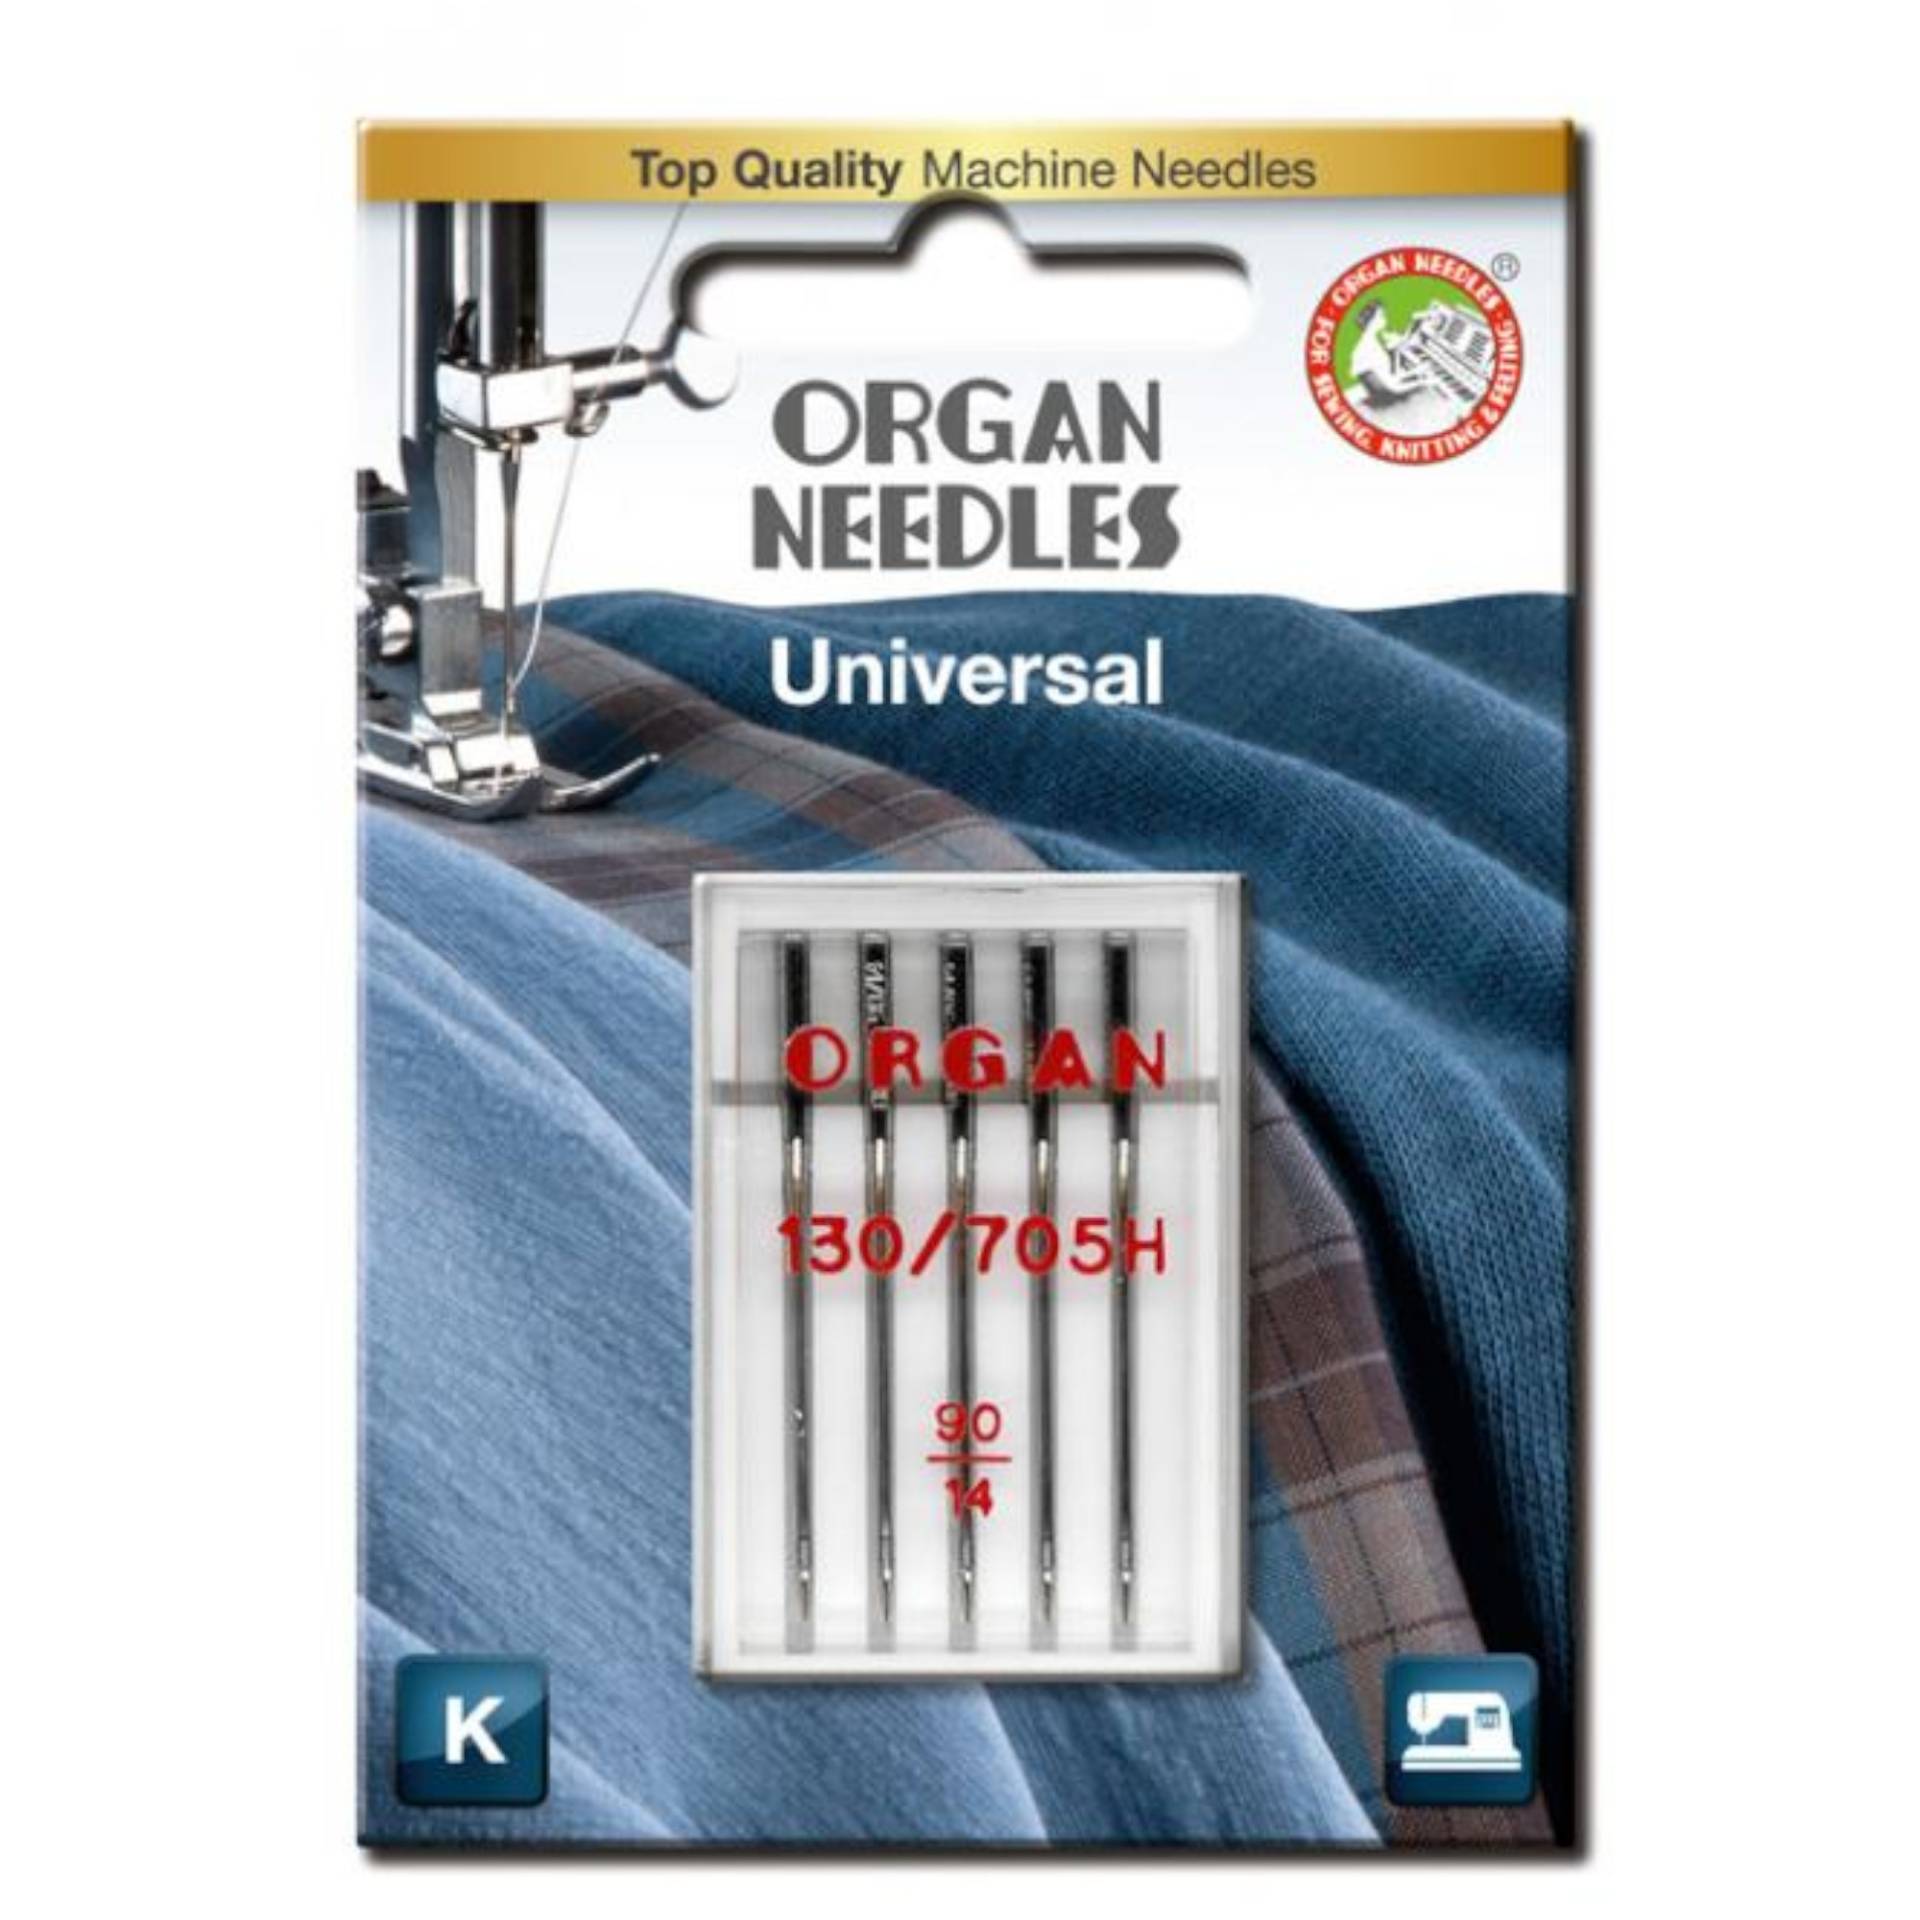 5 Organ Nähmaschinennadeln 130/705 H, Universal 90 von Stoffe Hemmers